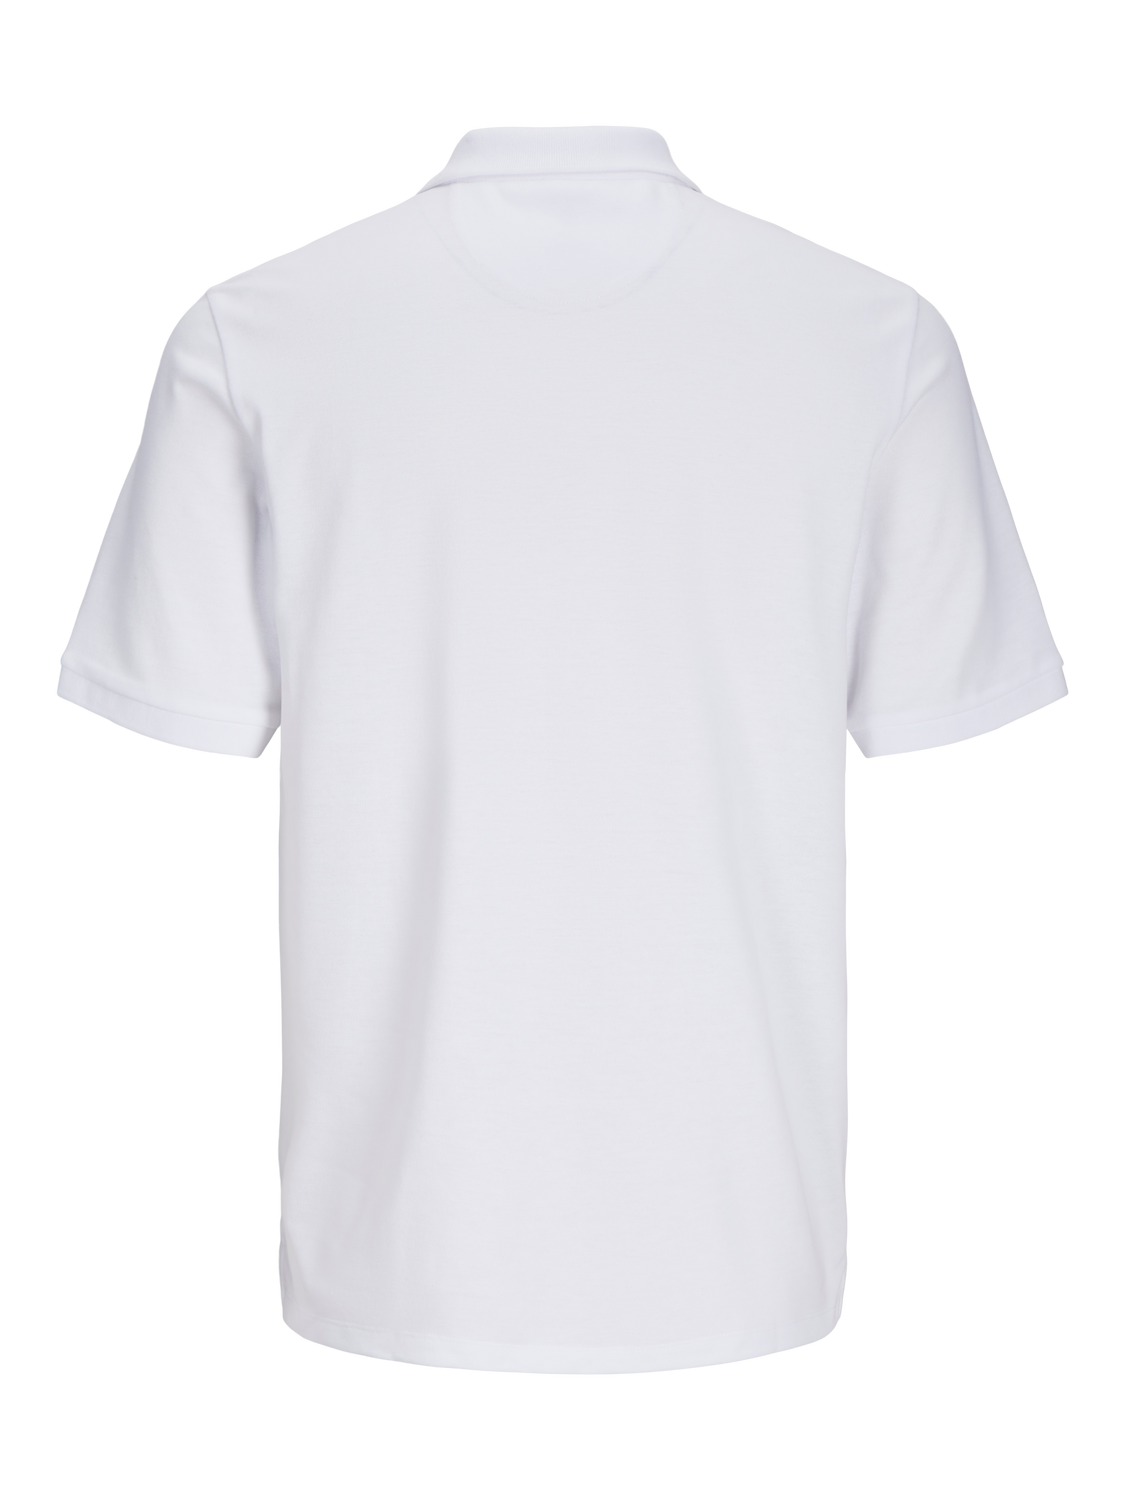 OL Polo Shirt - White